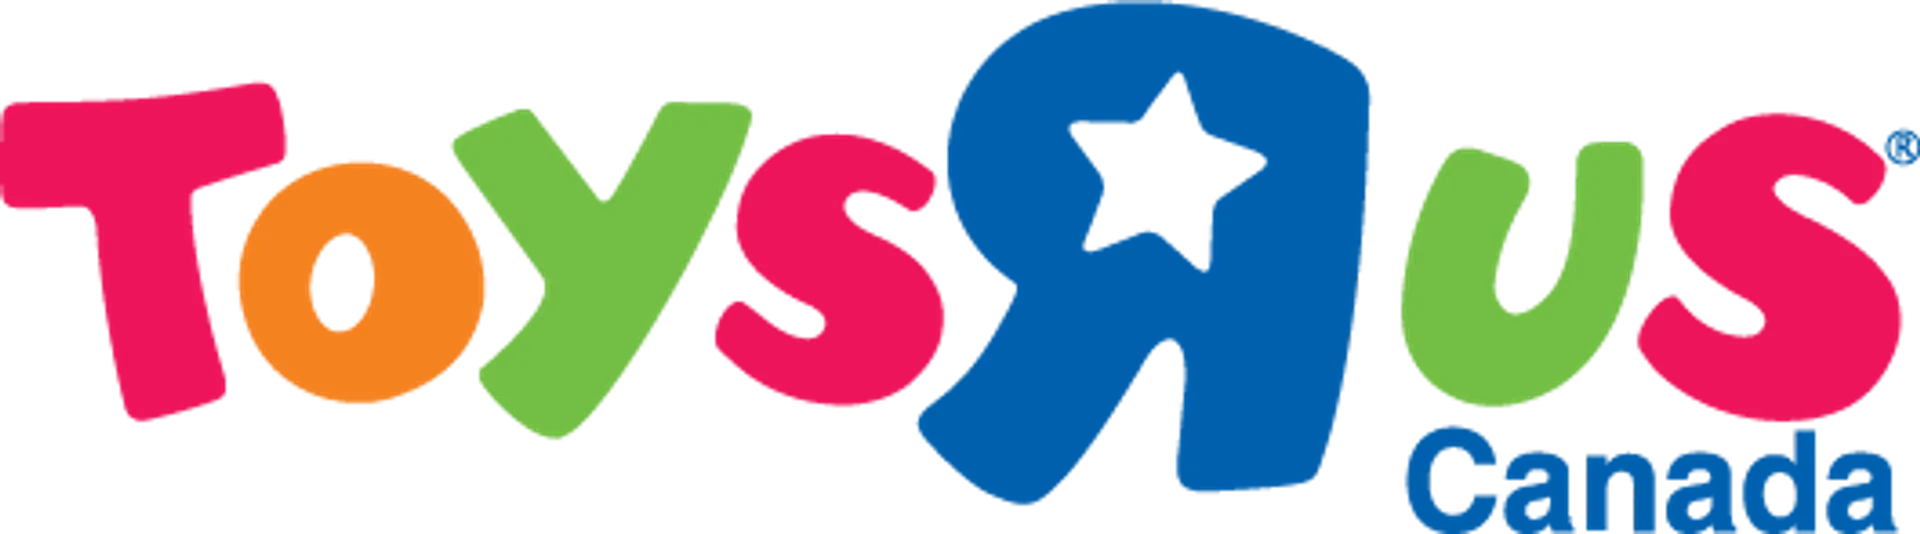 TOYS "R" US logo de circulaire